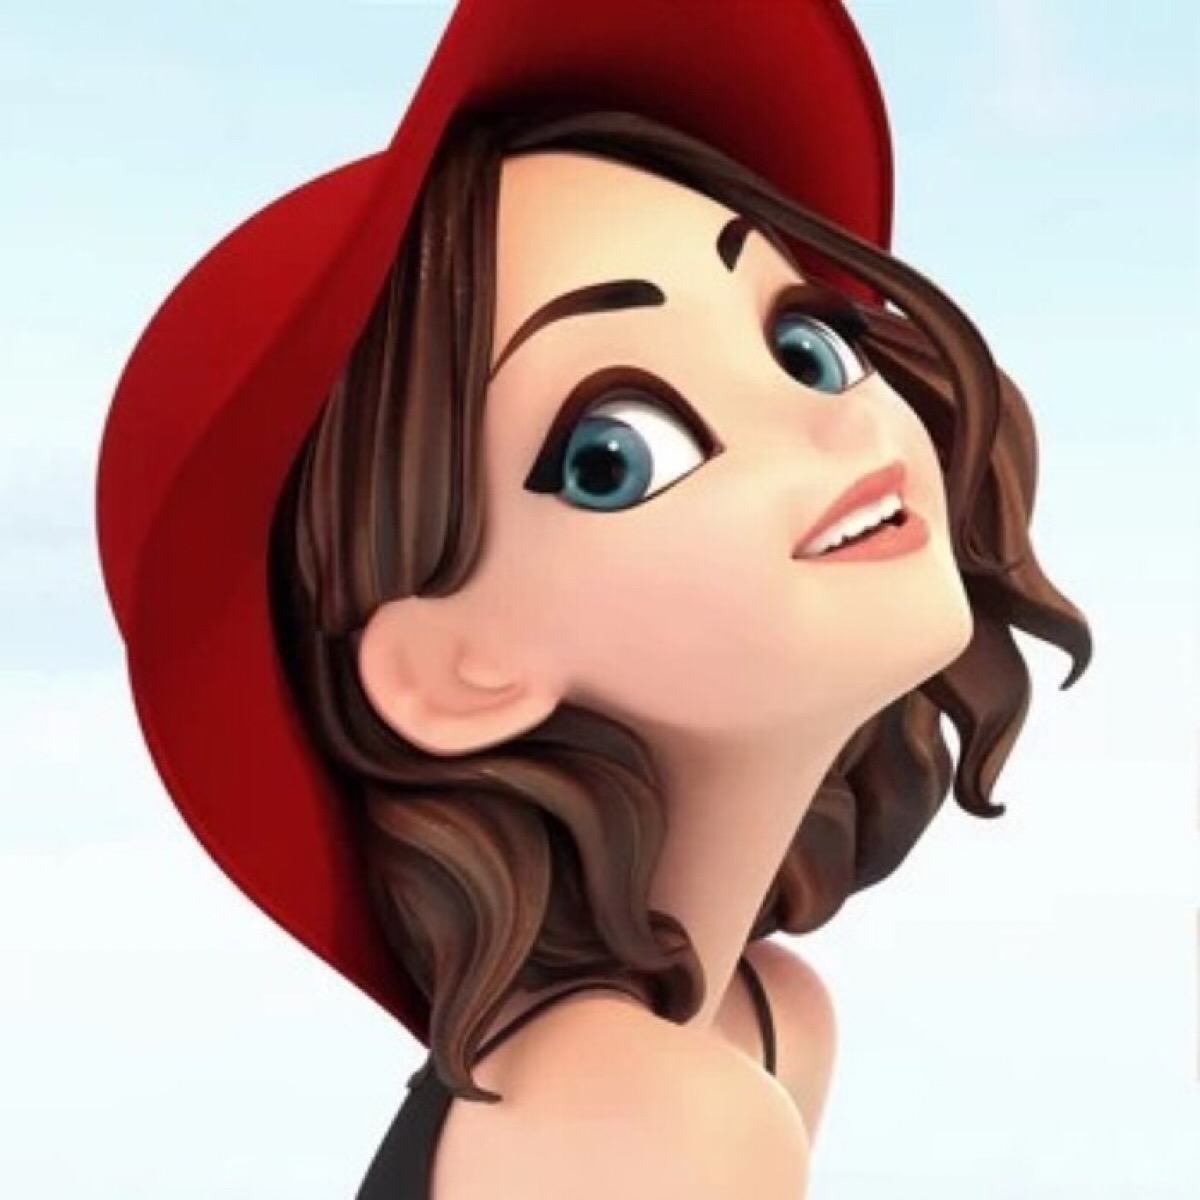 很酷的女生卡通头像 带着红色帽子时尚发型简直就是酷毙了